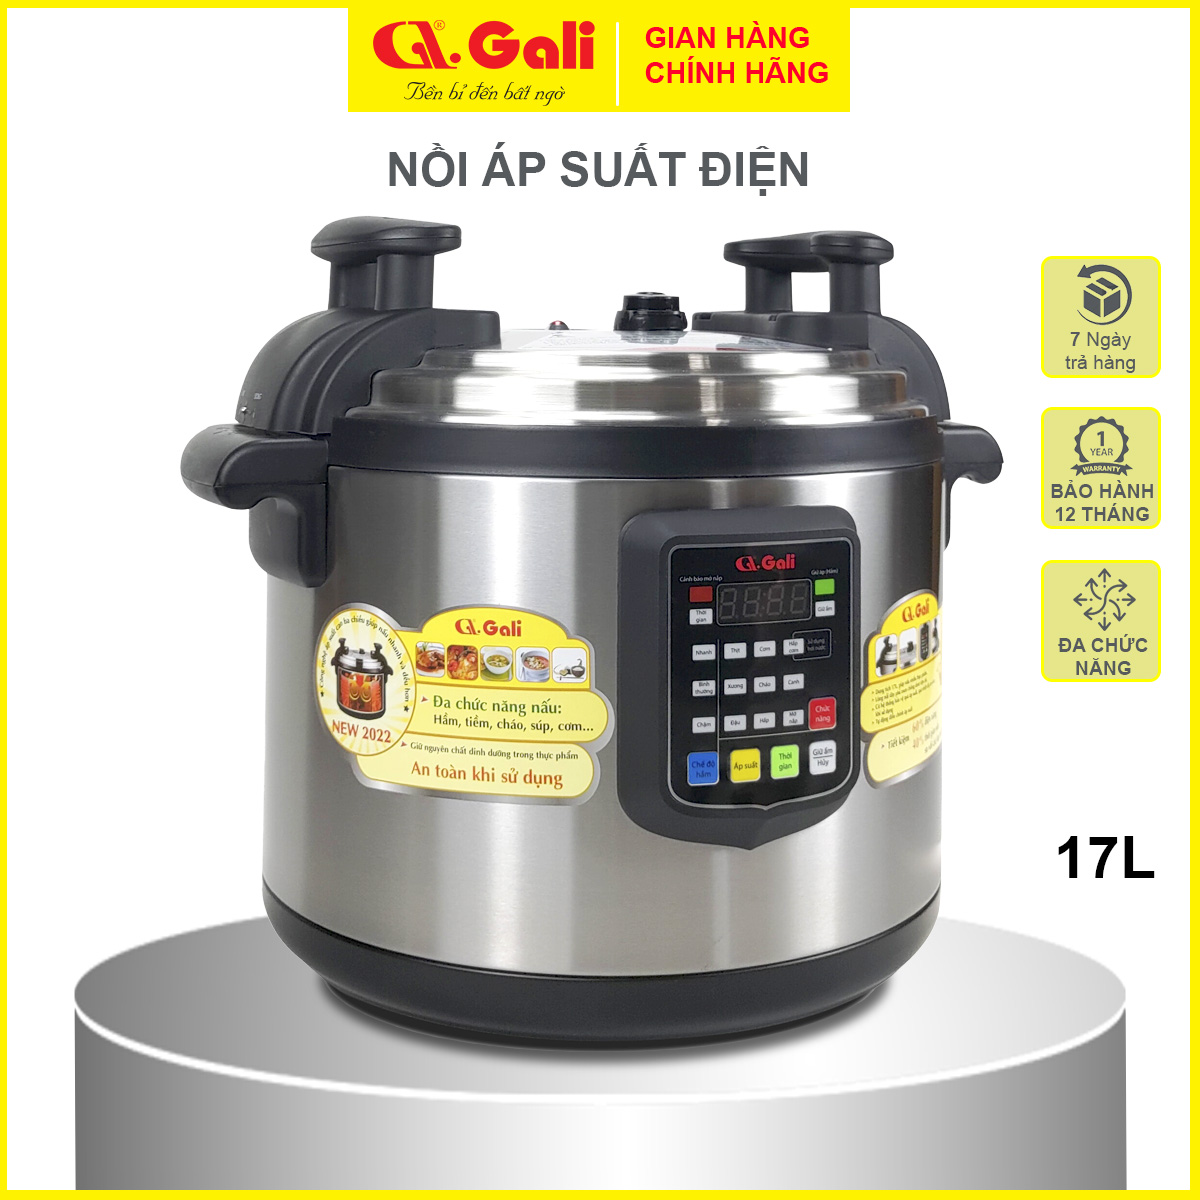 Nồi áp suất Gali GL-1626, dung tích 17lít, Sử dụng hoàn hảo cho các nhà hàng, quán ăn, trường học, hàng chính hãng 100%, bảo hành 24 tháng Gali